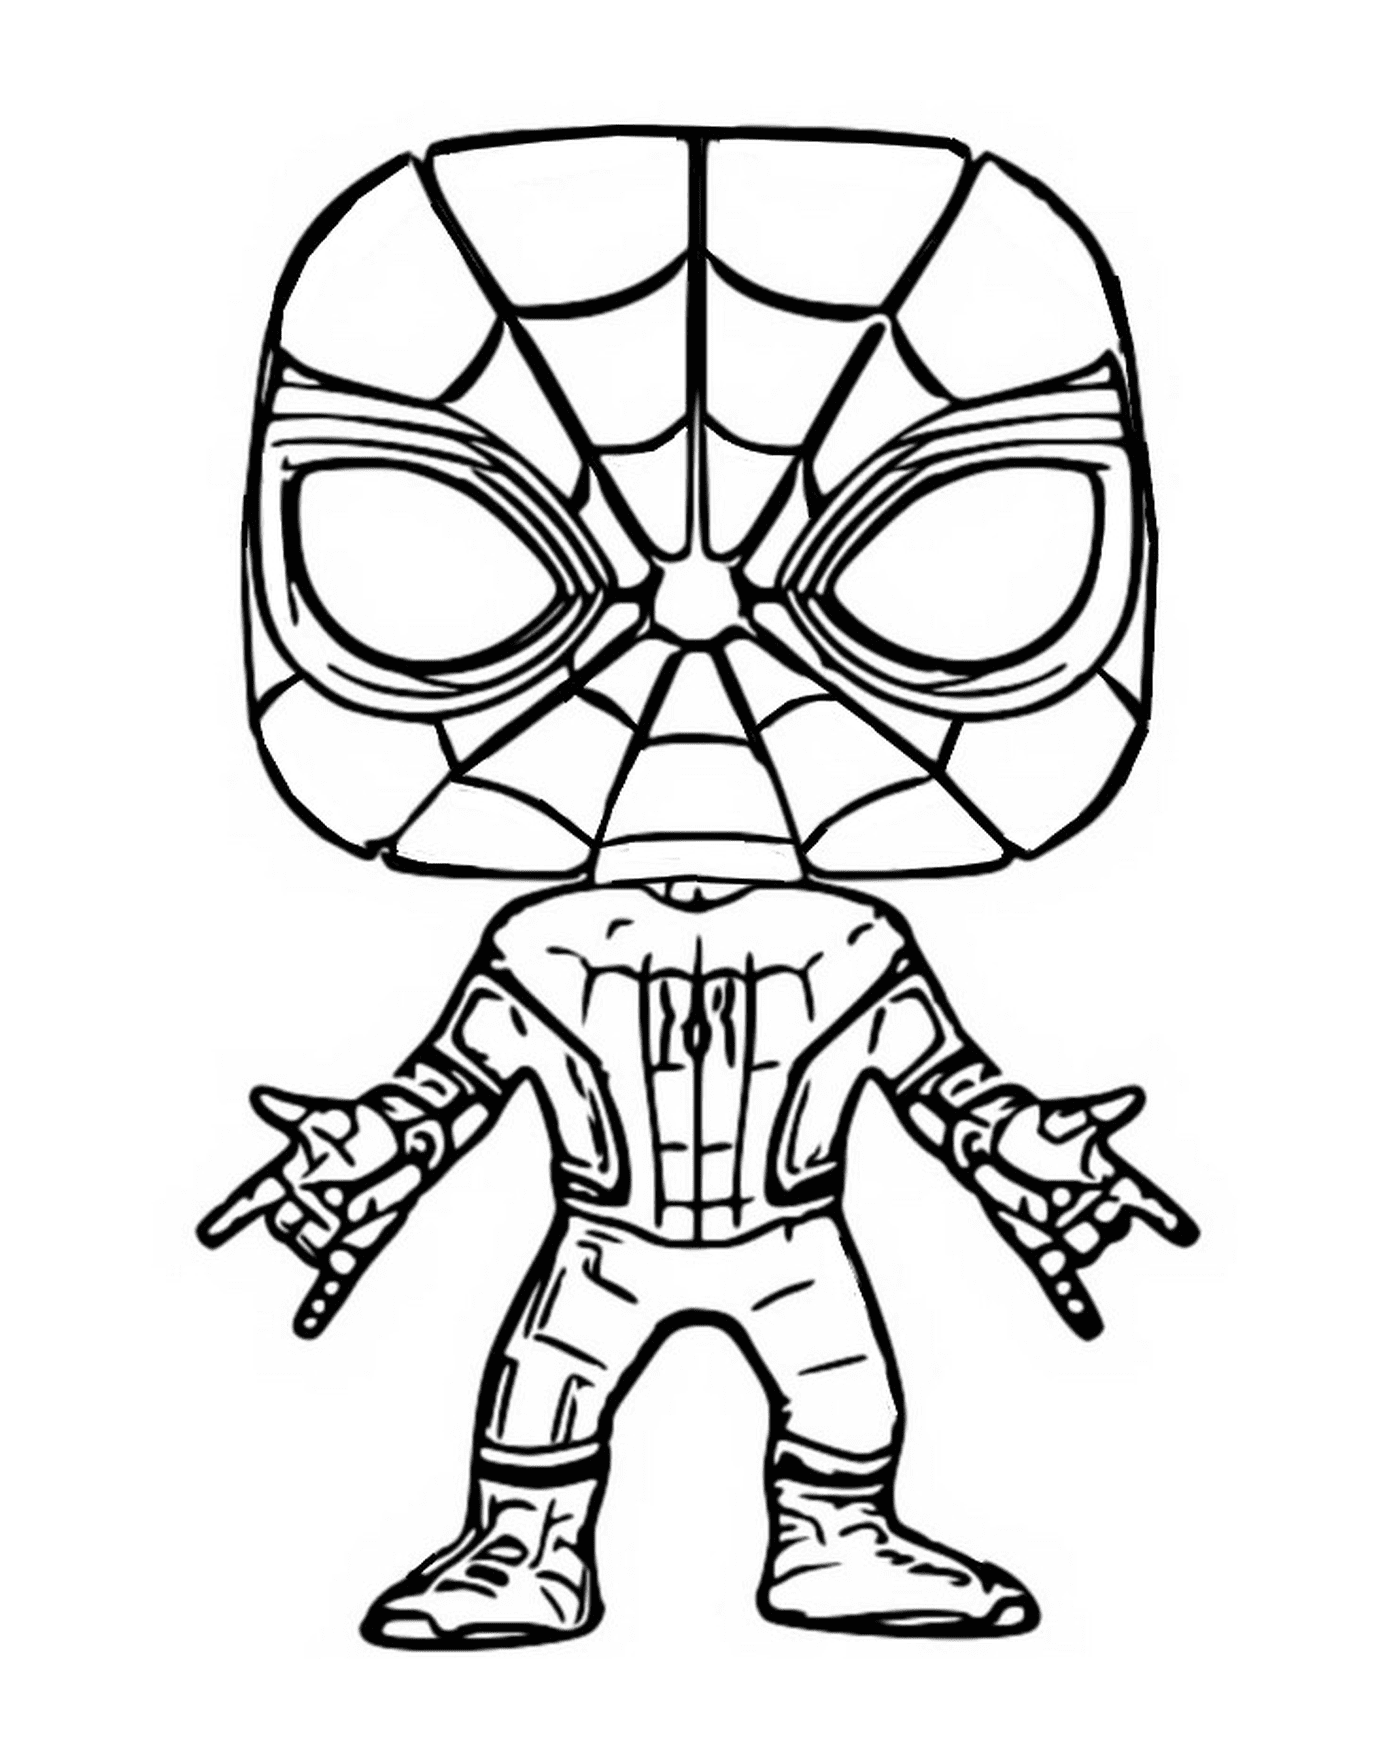  Человек-паук, фигура Функо Поп 